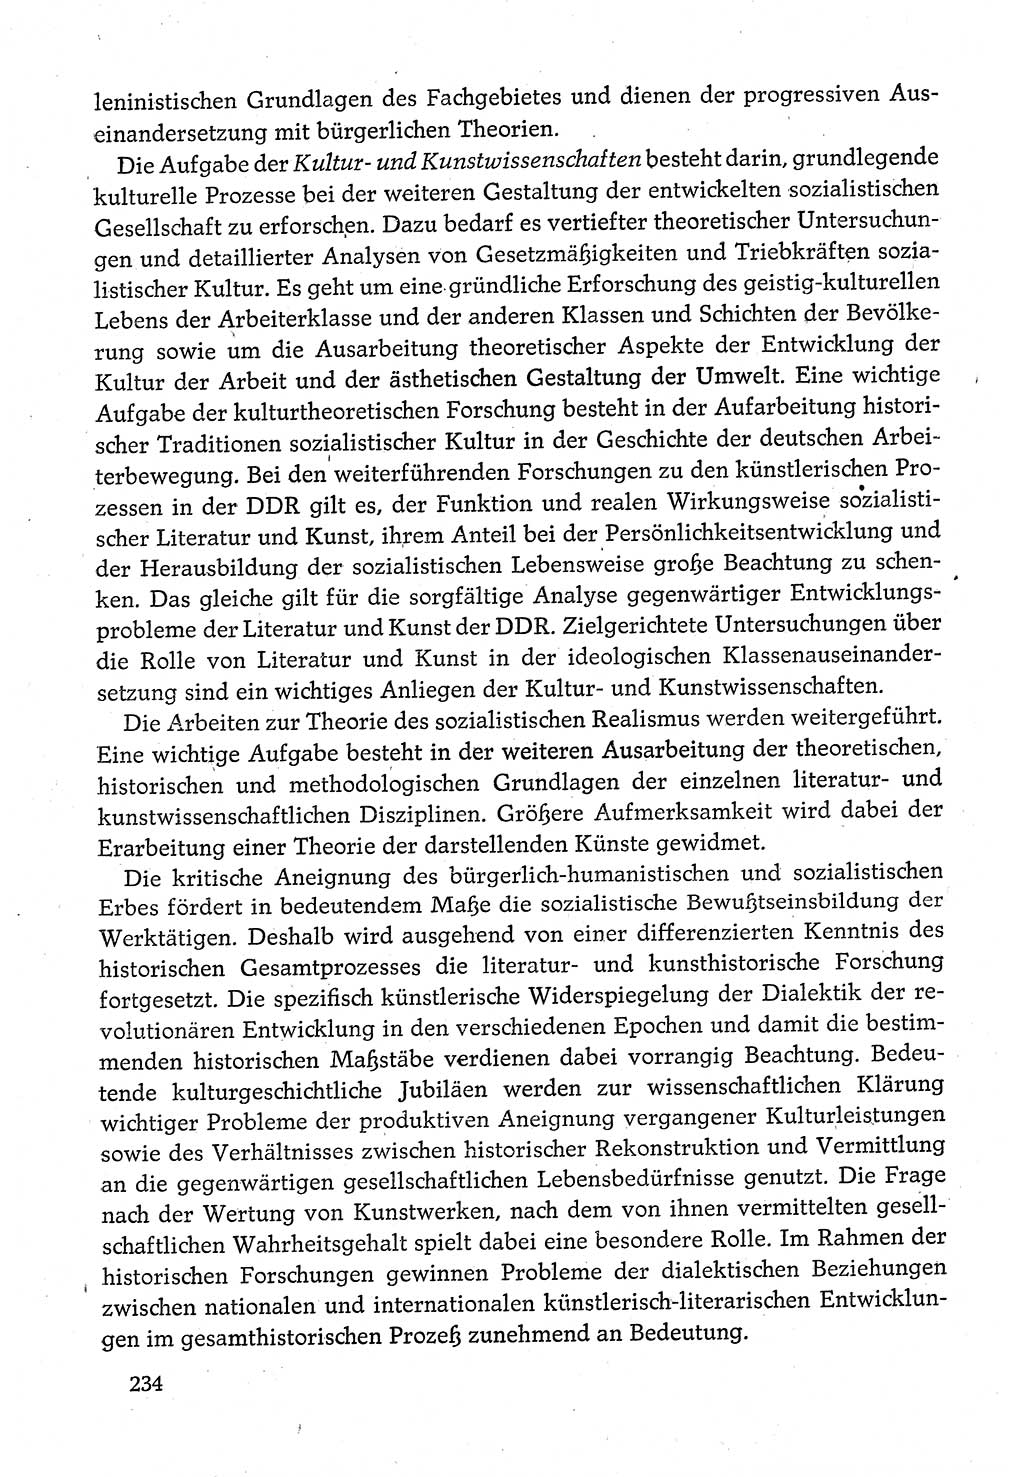 Dokumente der Sozialistischen Einheitspartei Deutschlands (SED) [Deutsche Demokratische Republik (DDR)] 1980-1981, Seite 234 (Dok. SED DDR 1980-1981, S. 234)